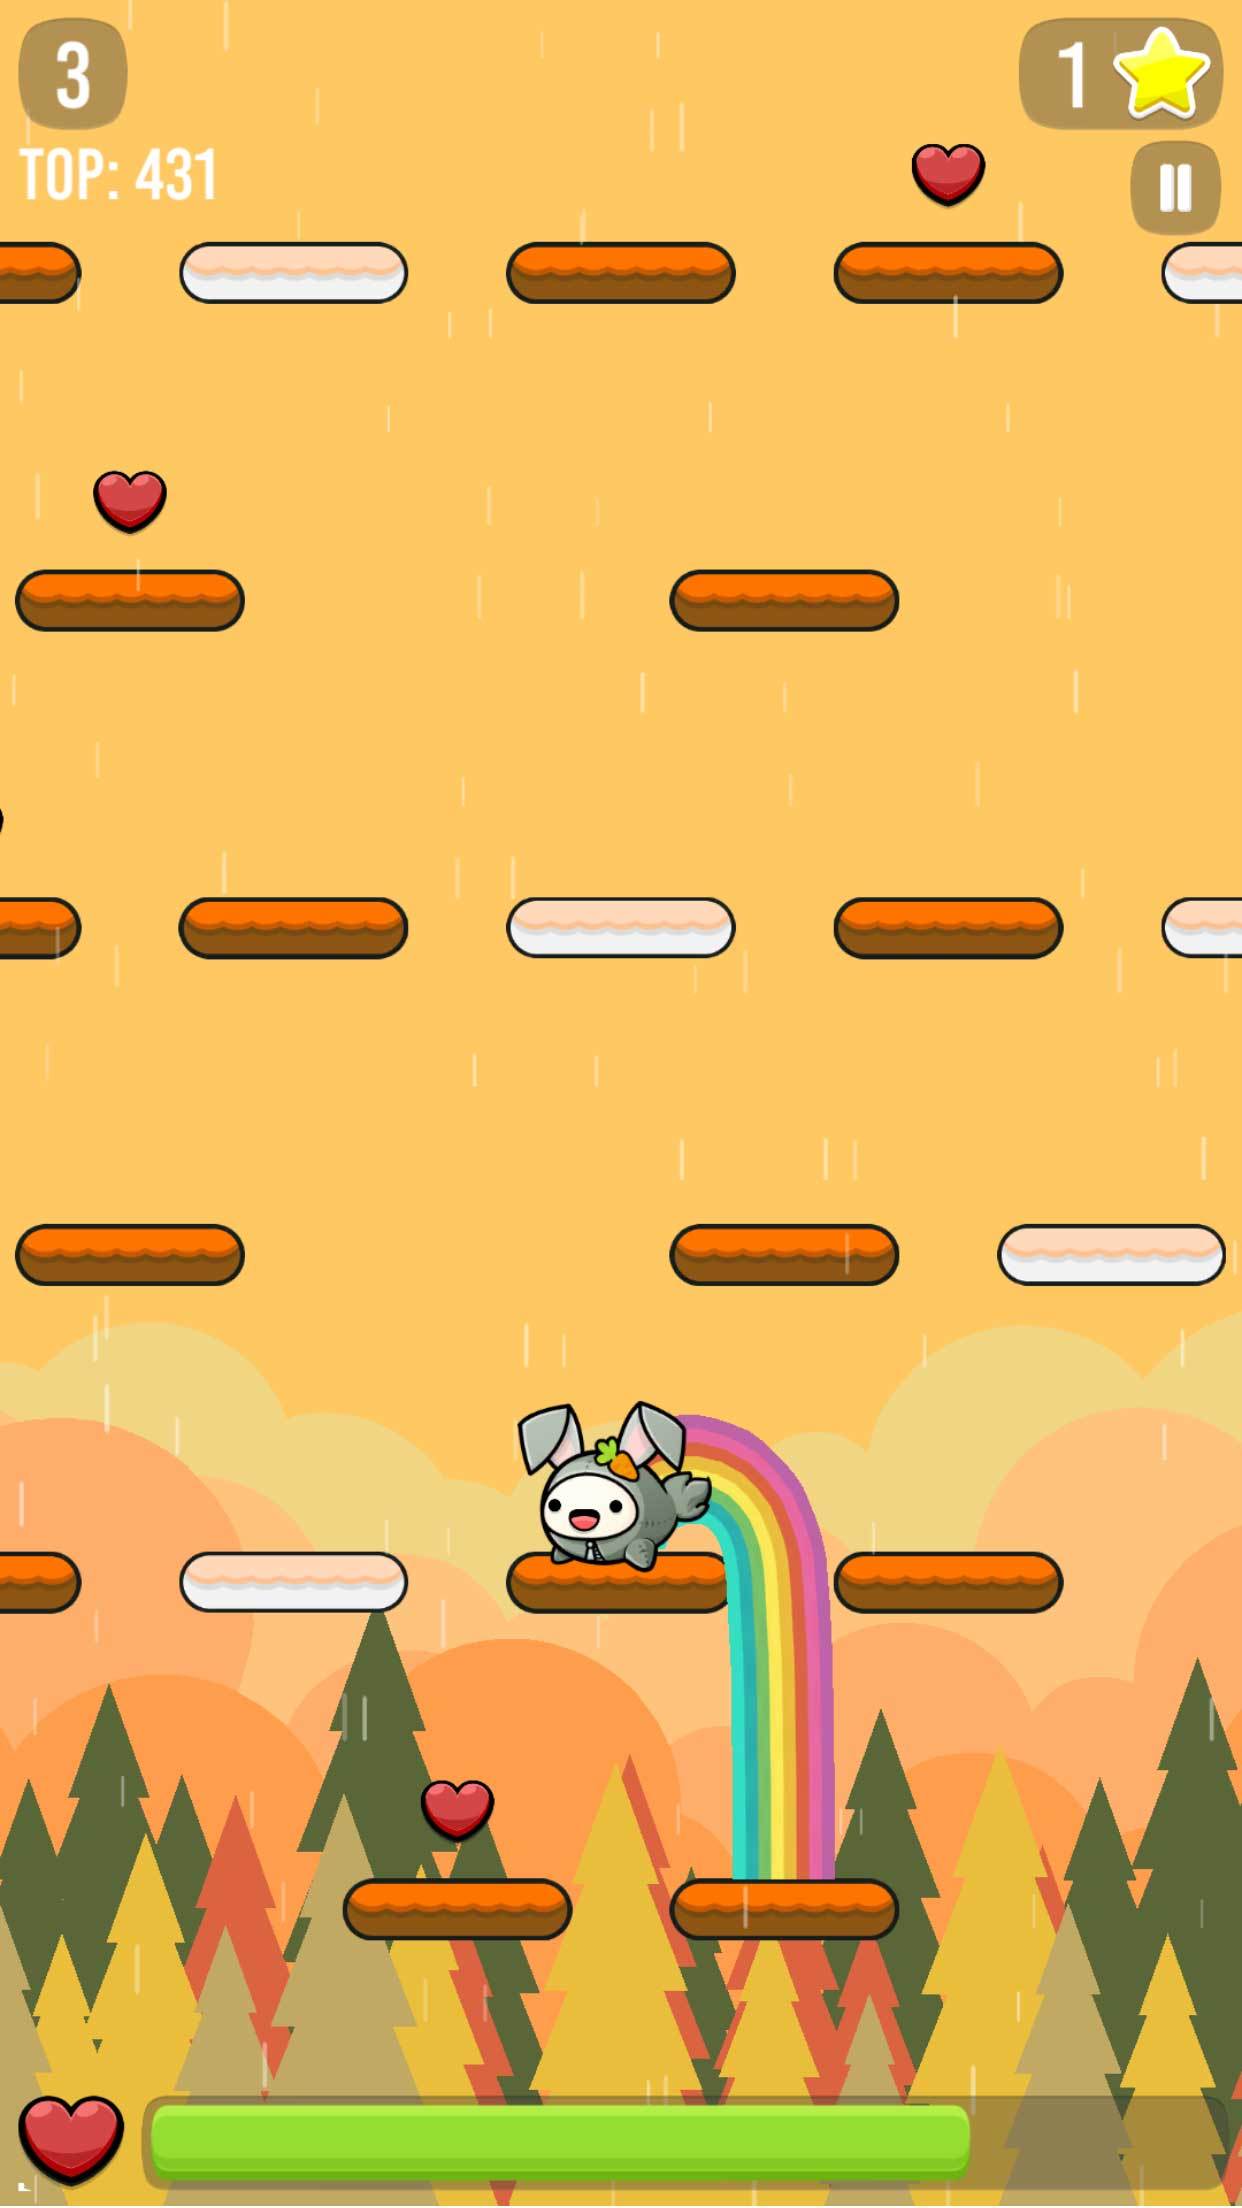 Screenshot 1 of Regenbogen springen 